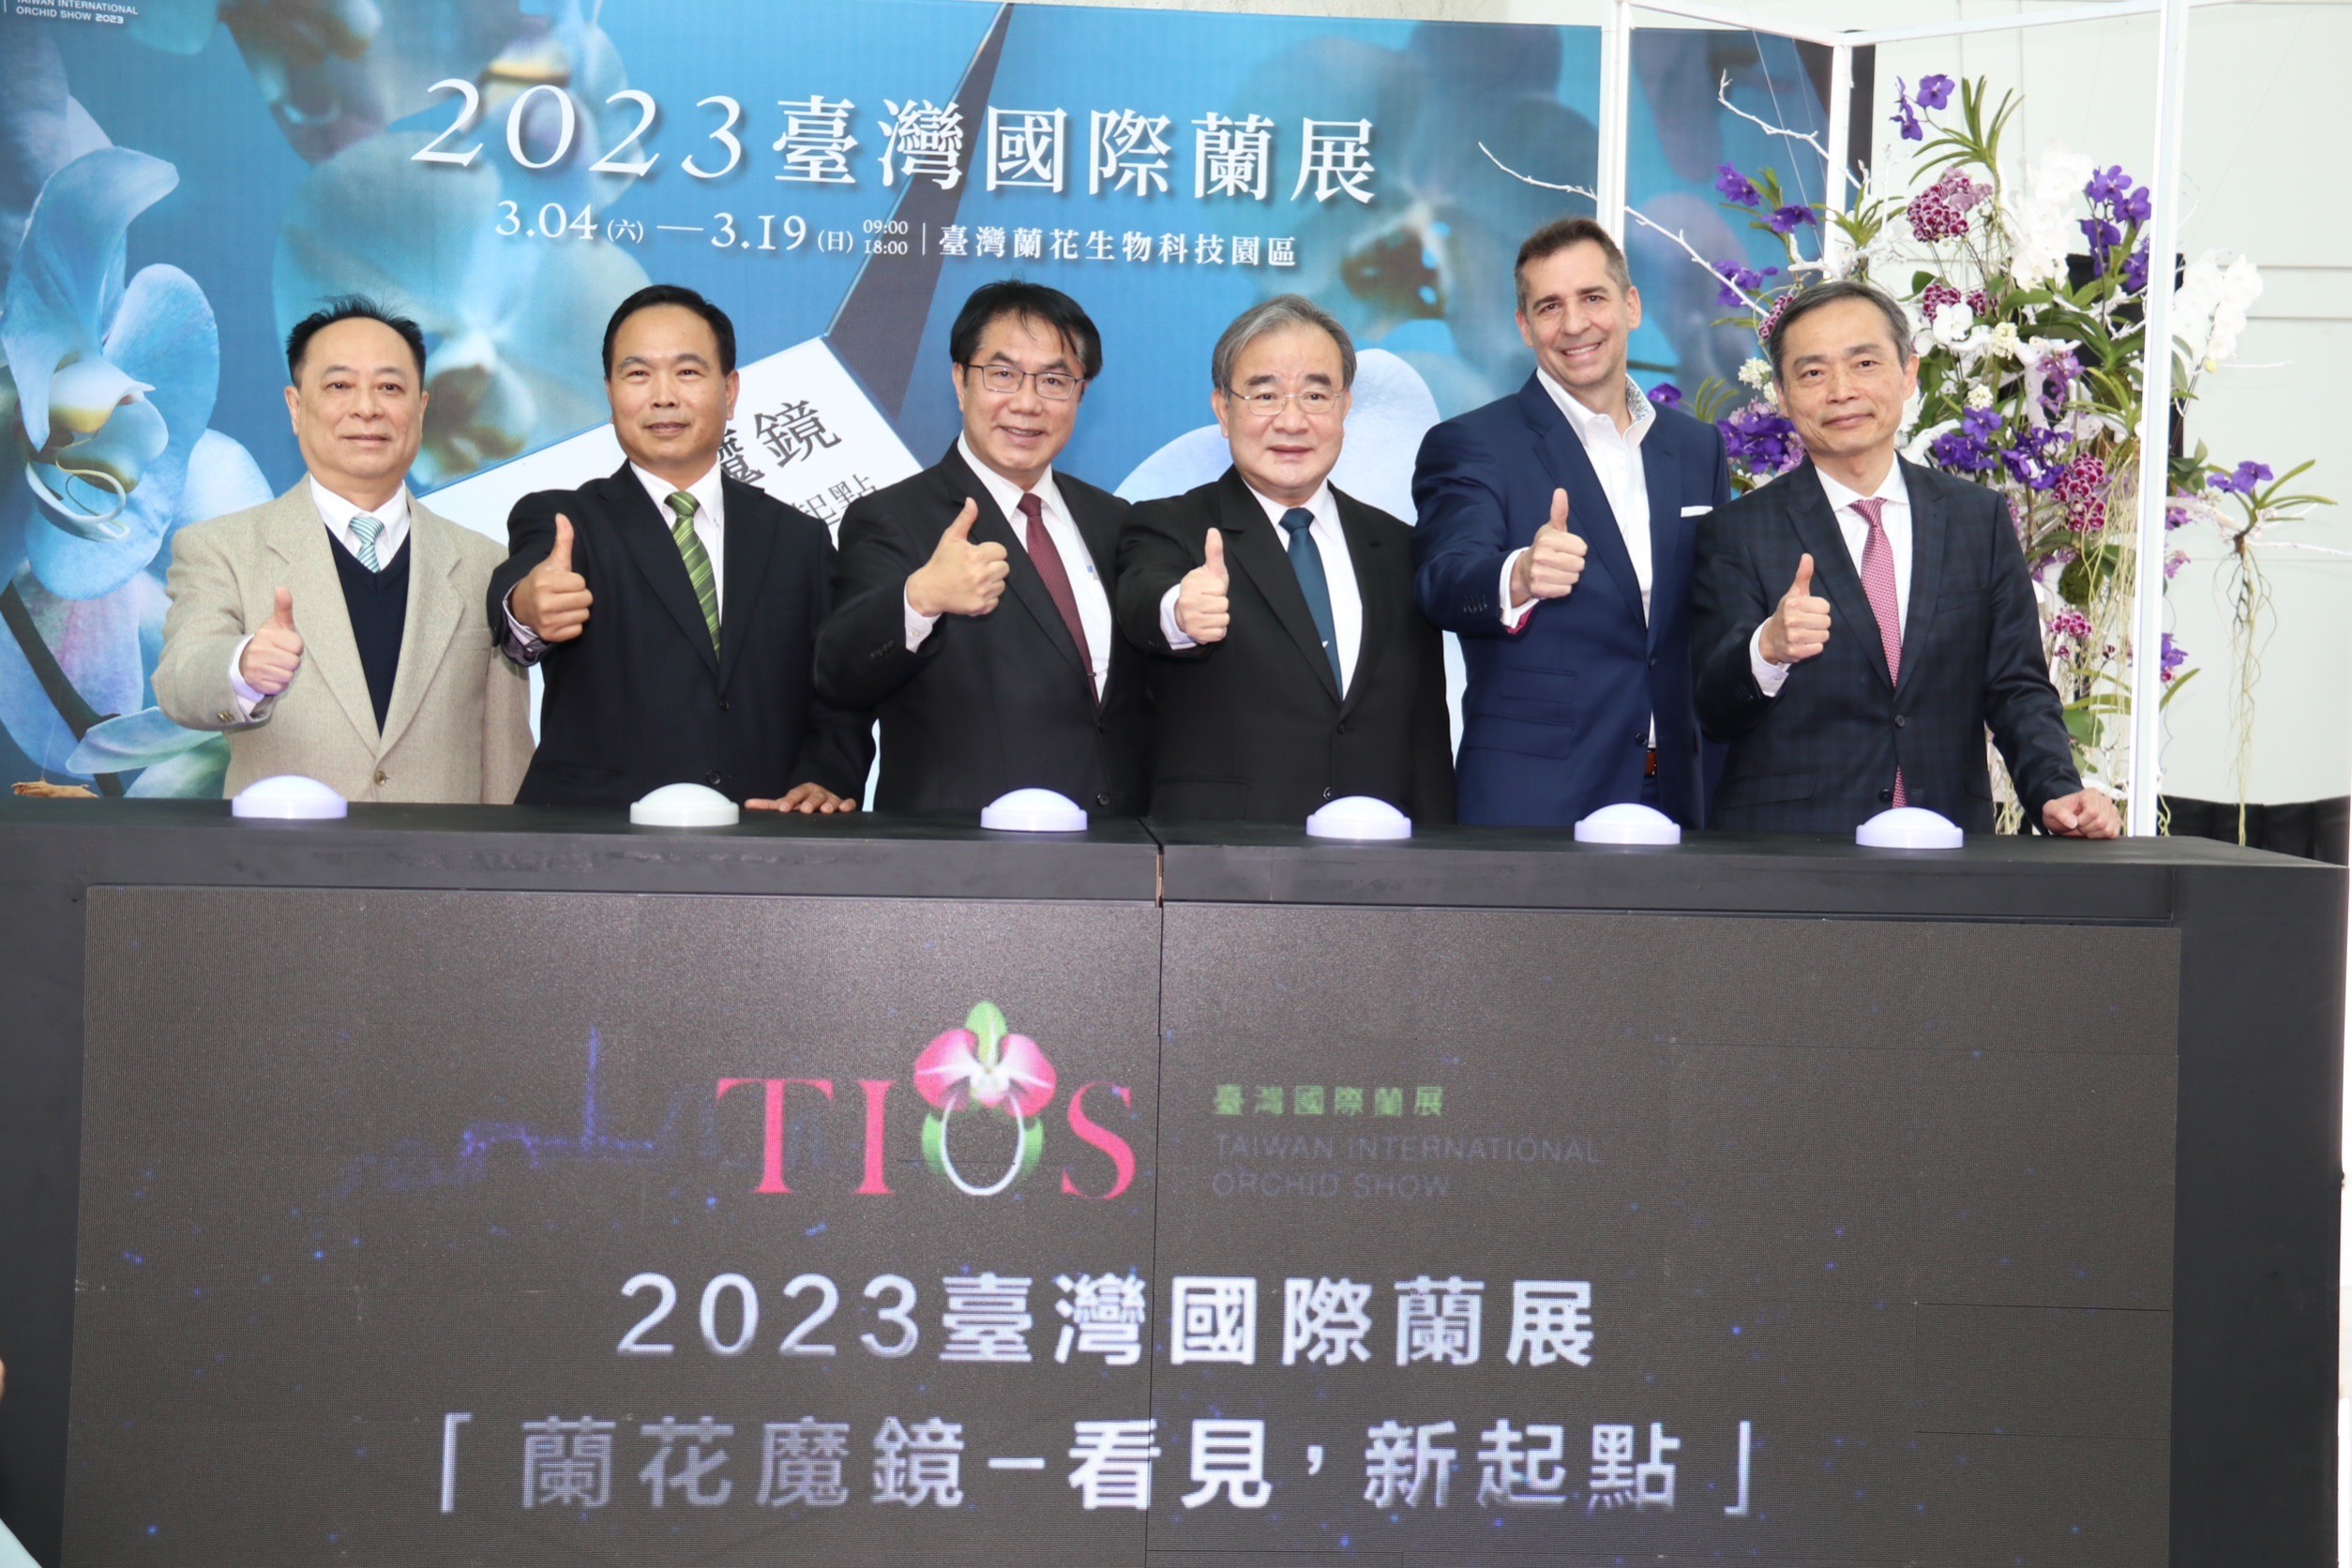 「2023台灣國際蘭展」 站在臺灣最高點見新點 3/4-3/19盛大展出